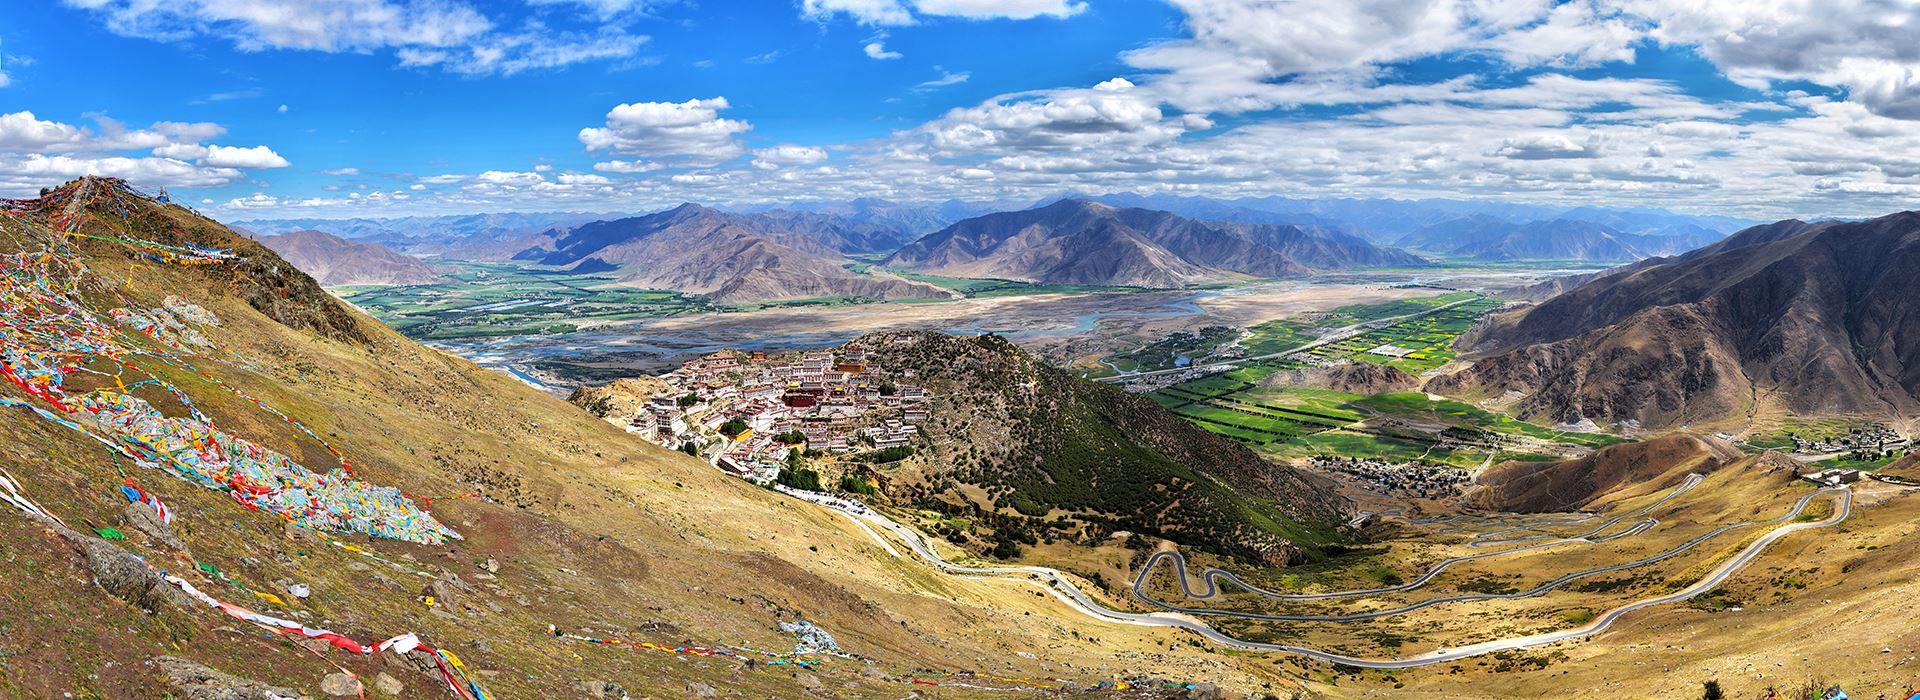 Überlandreise von Yunnan via Tibet nach Nepal mit Everest